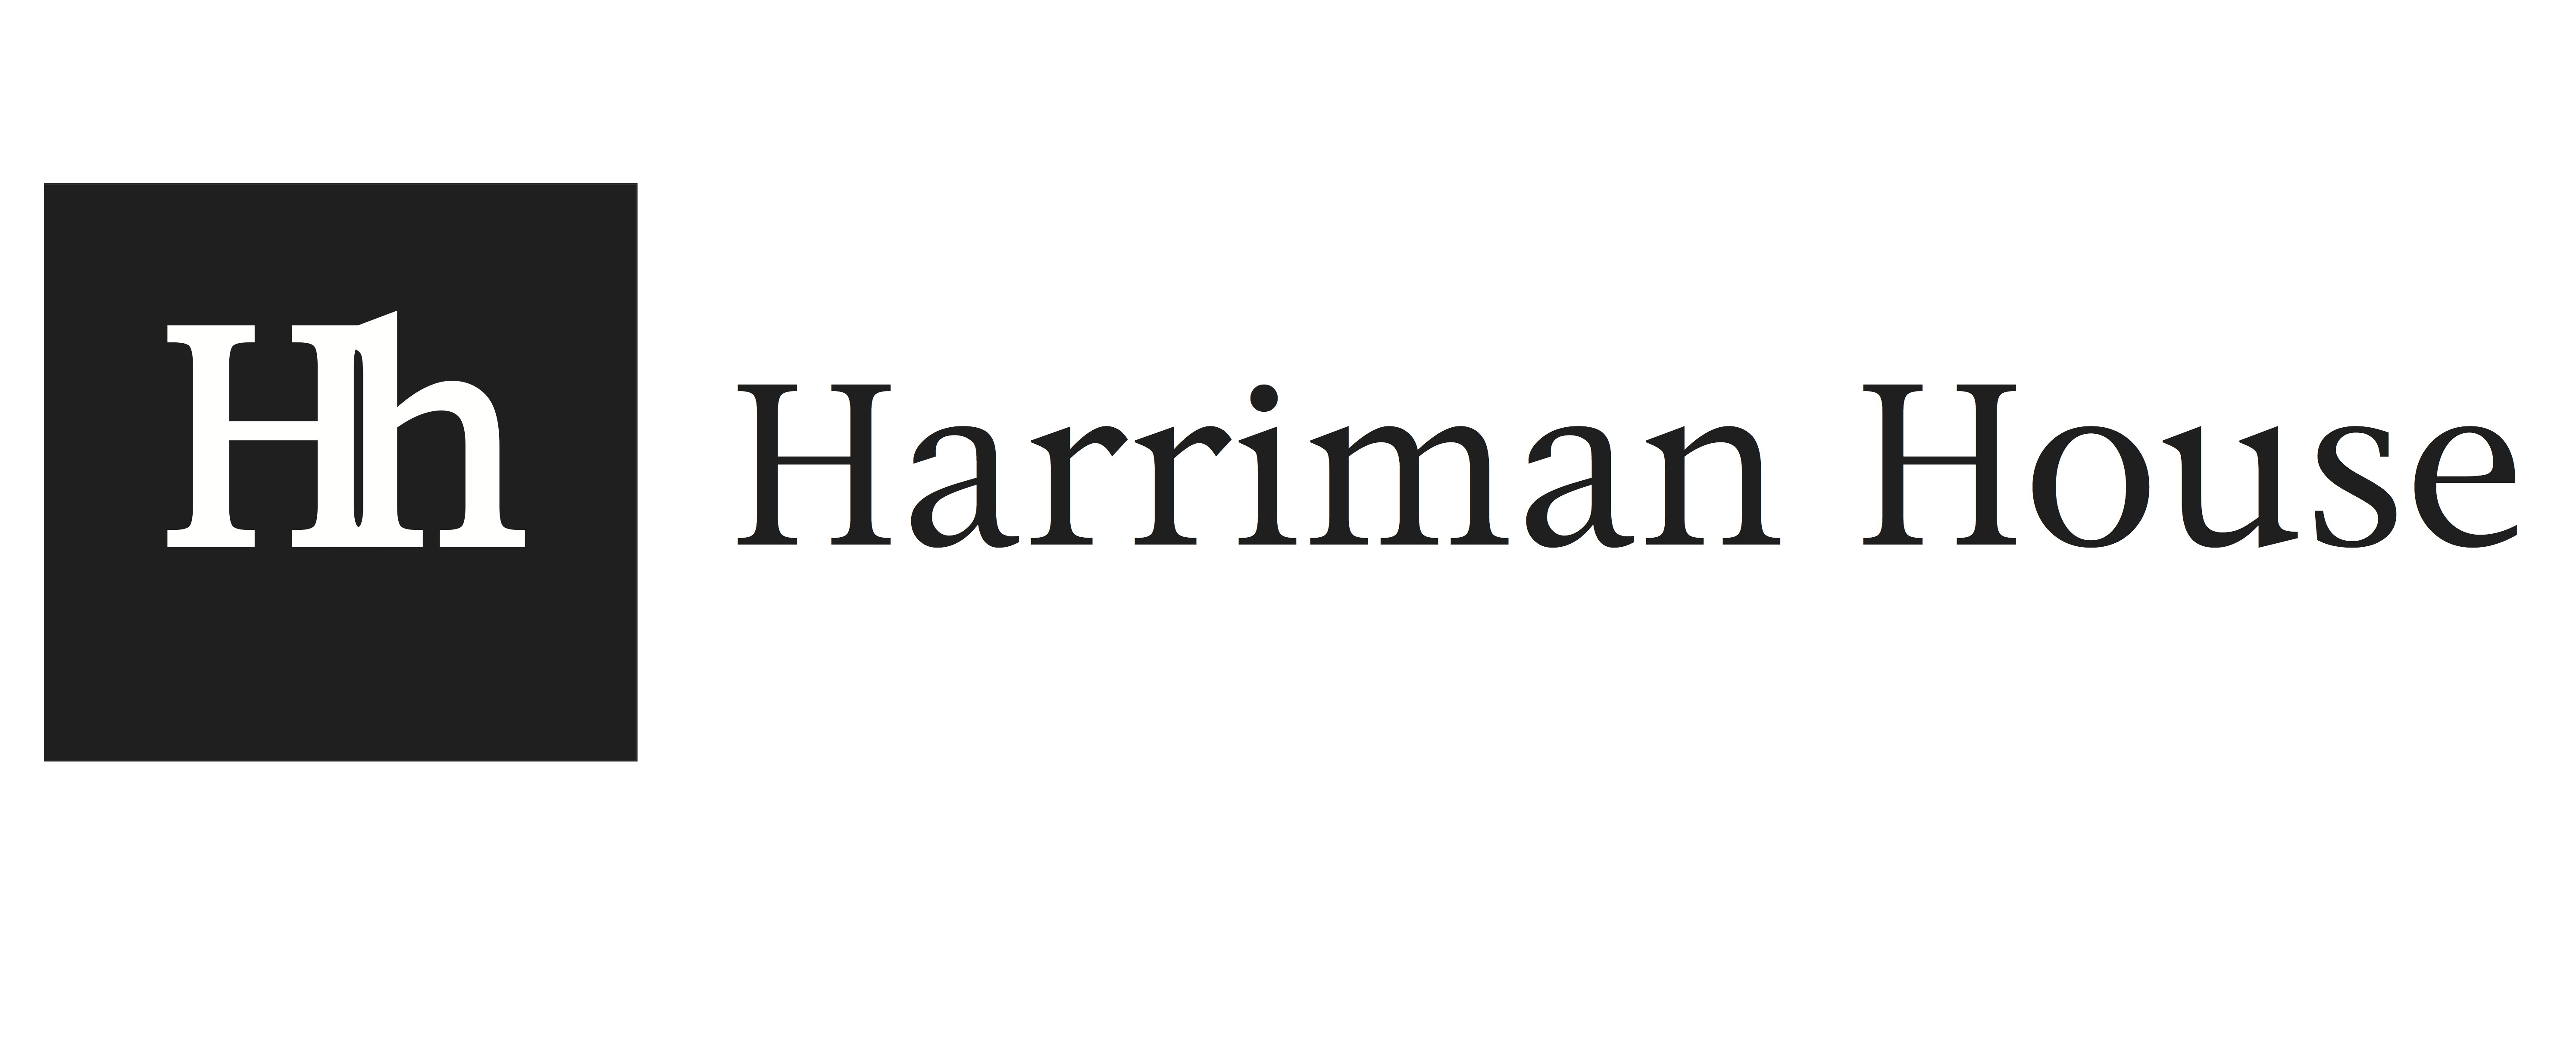 www.harriman-house.com